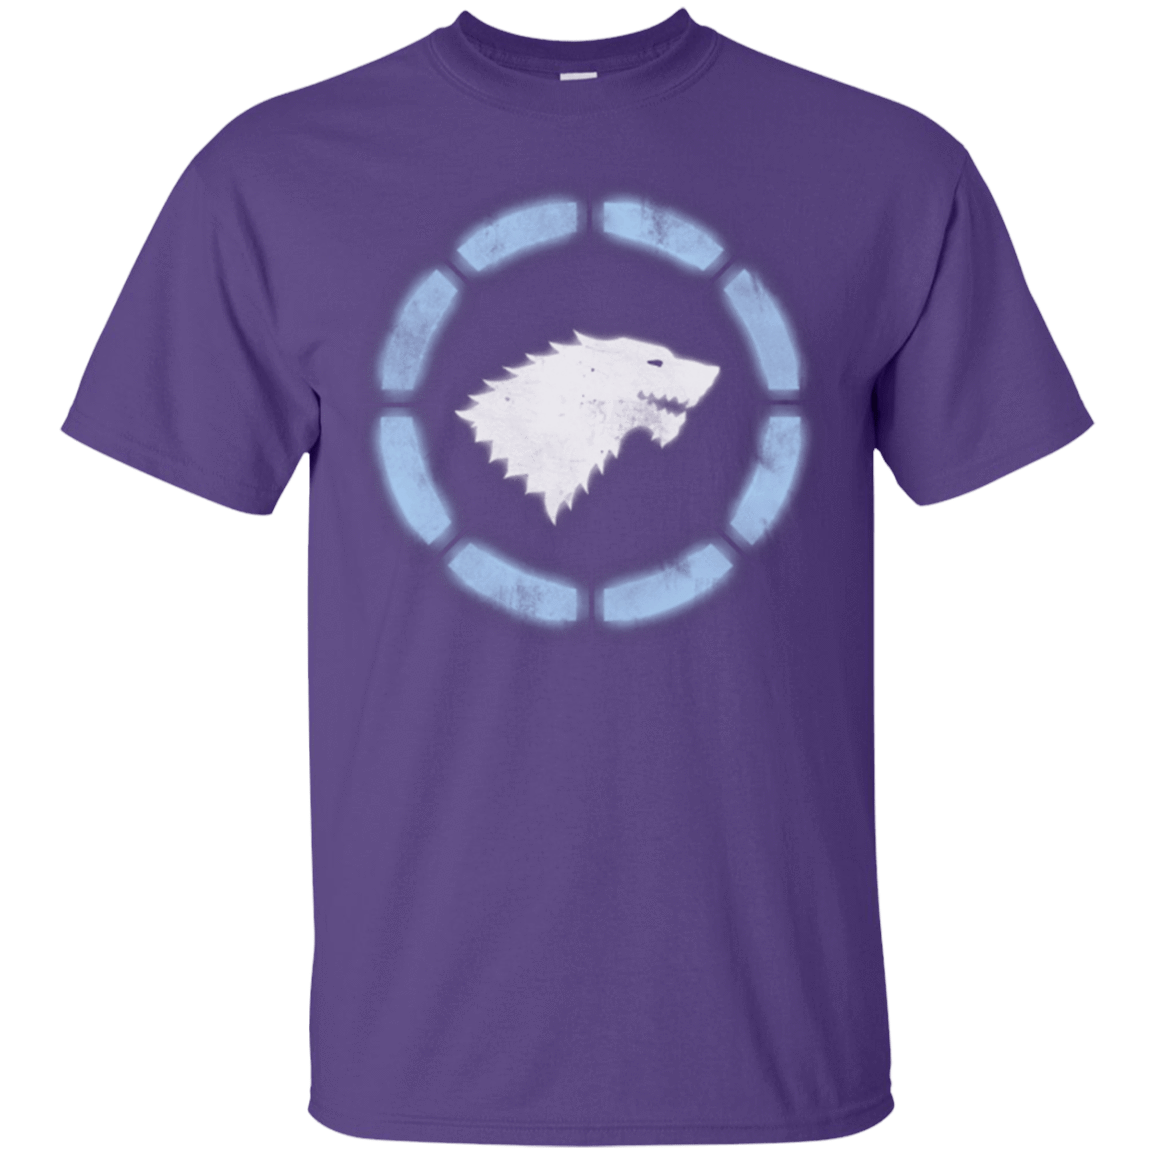 T-Shirts Purple / Small Iron Stark T-Shirt